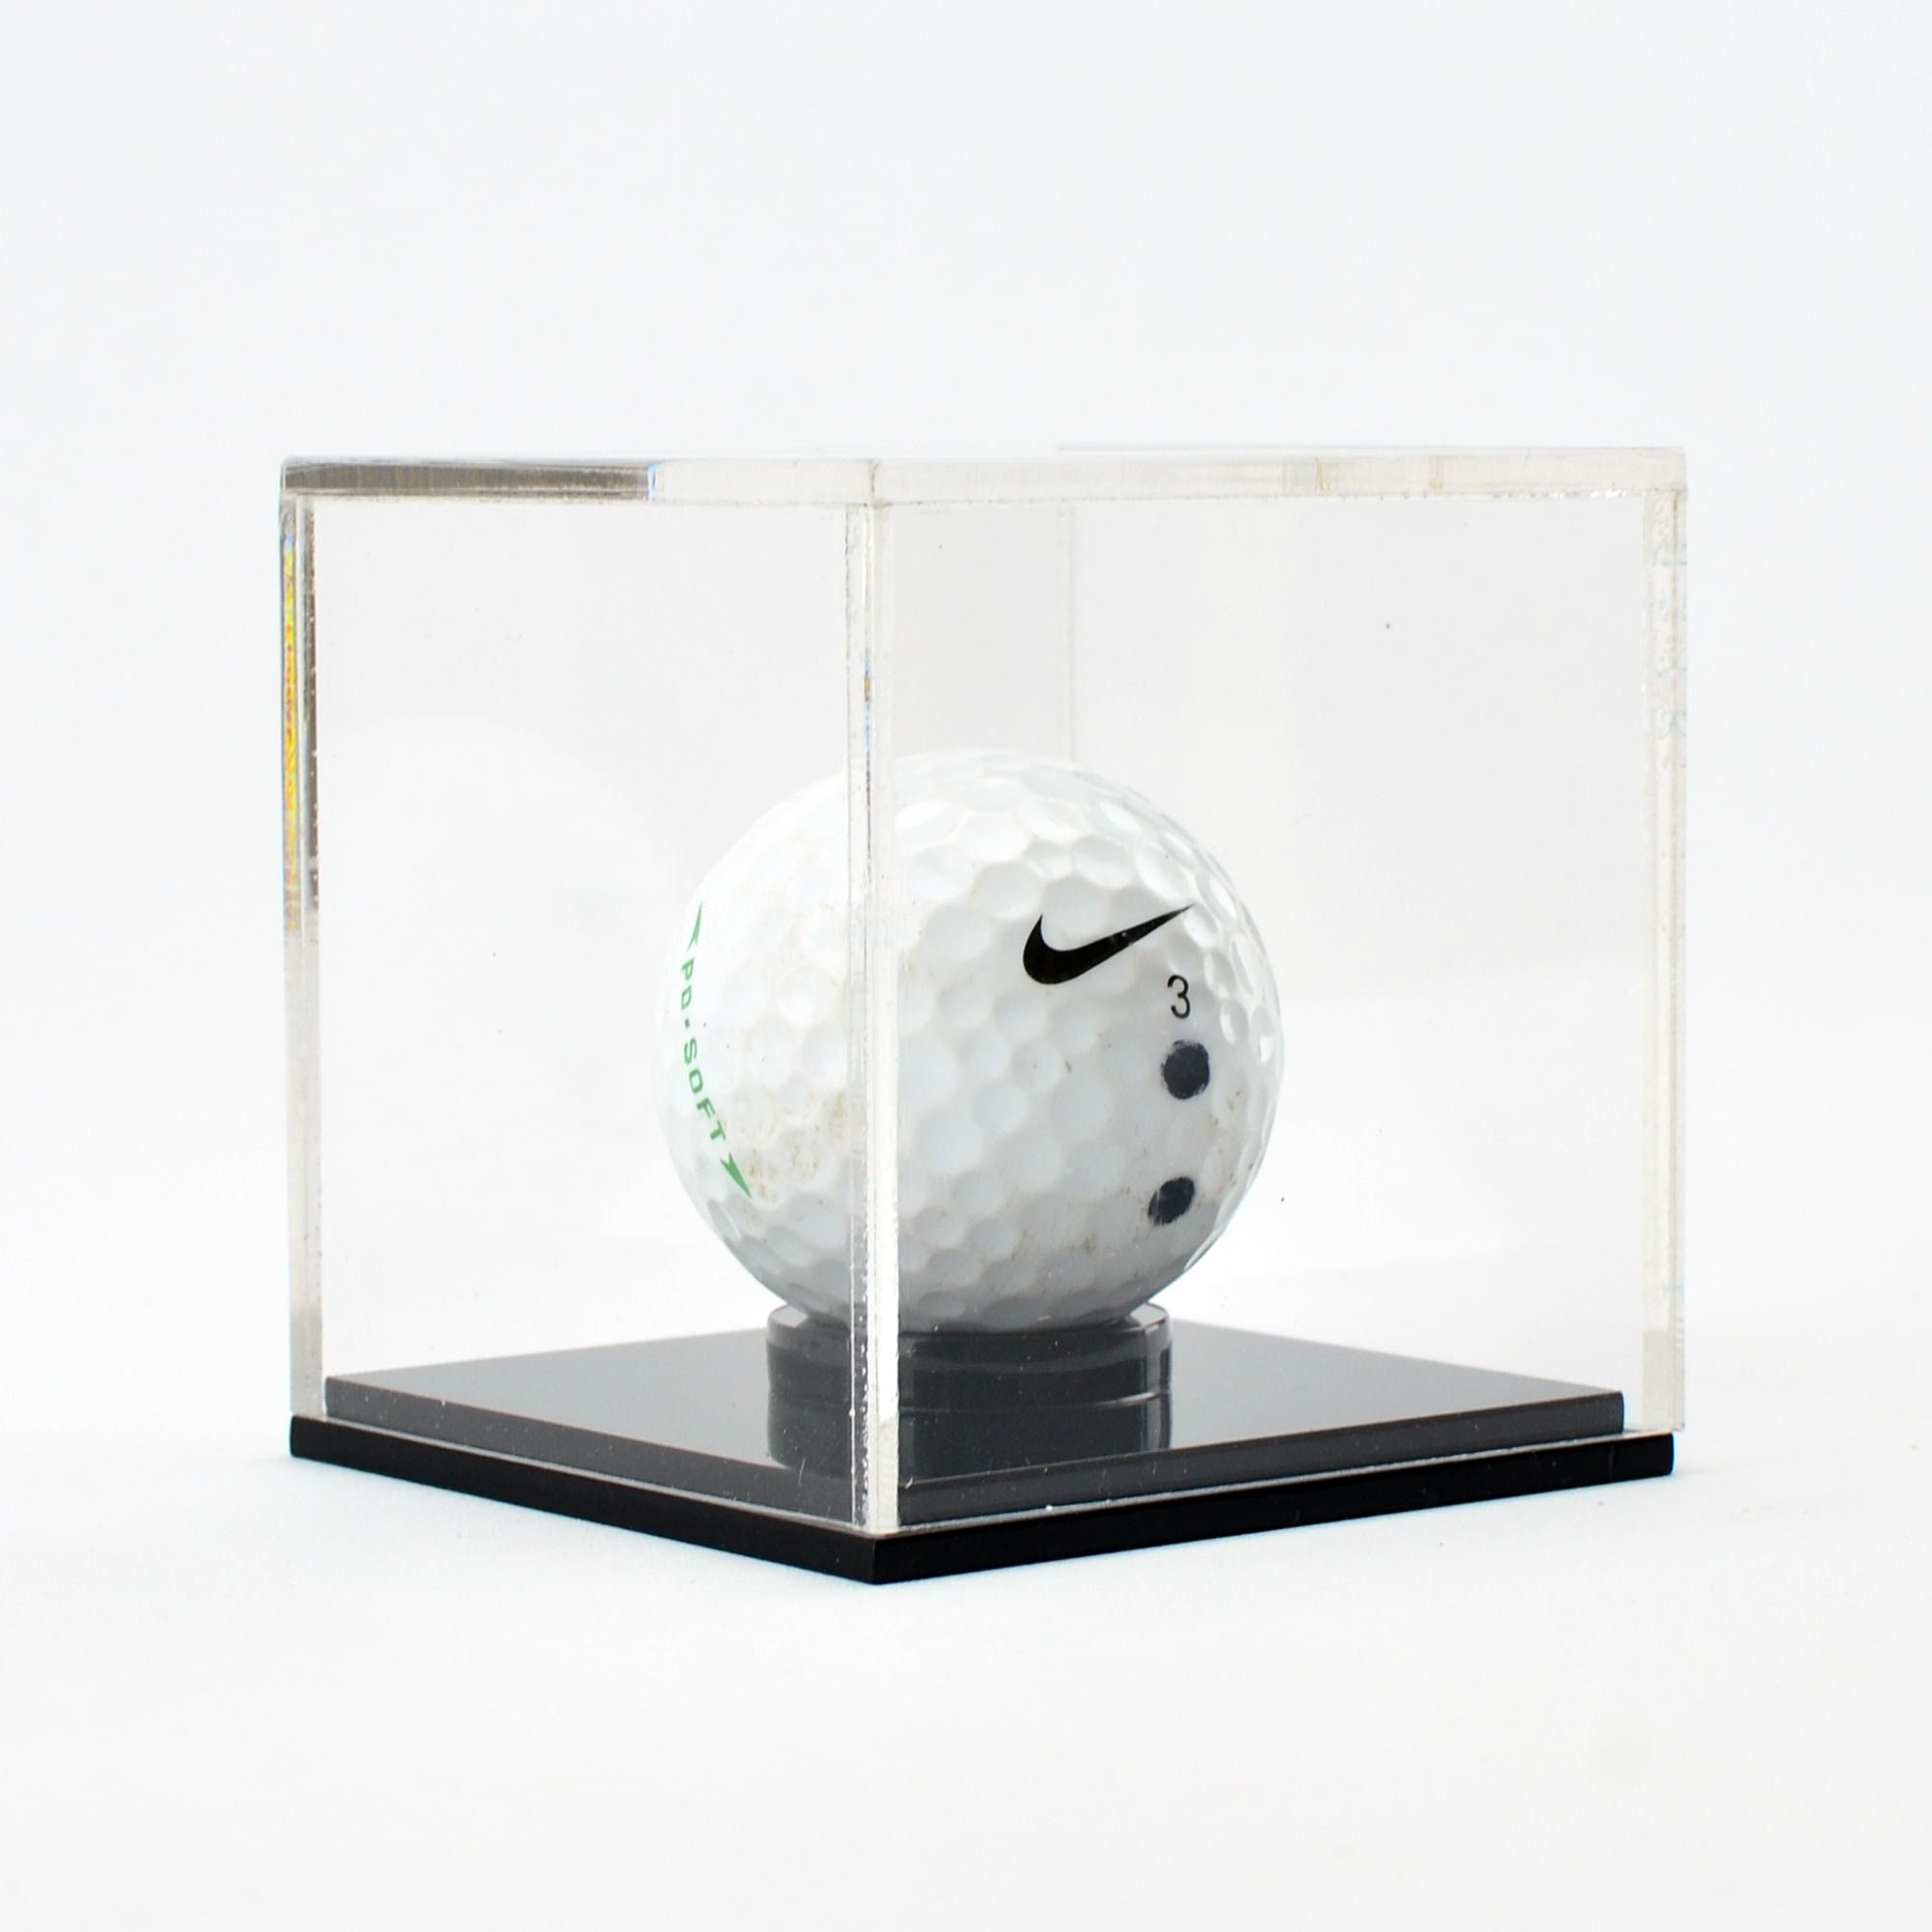 3 Golf Ball Display